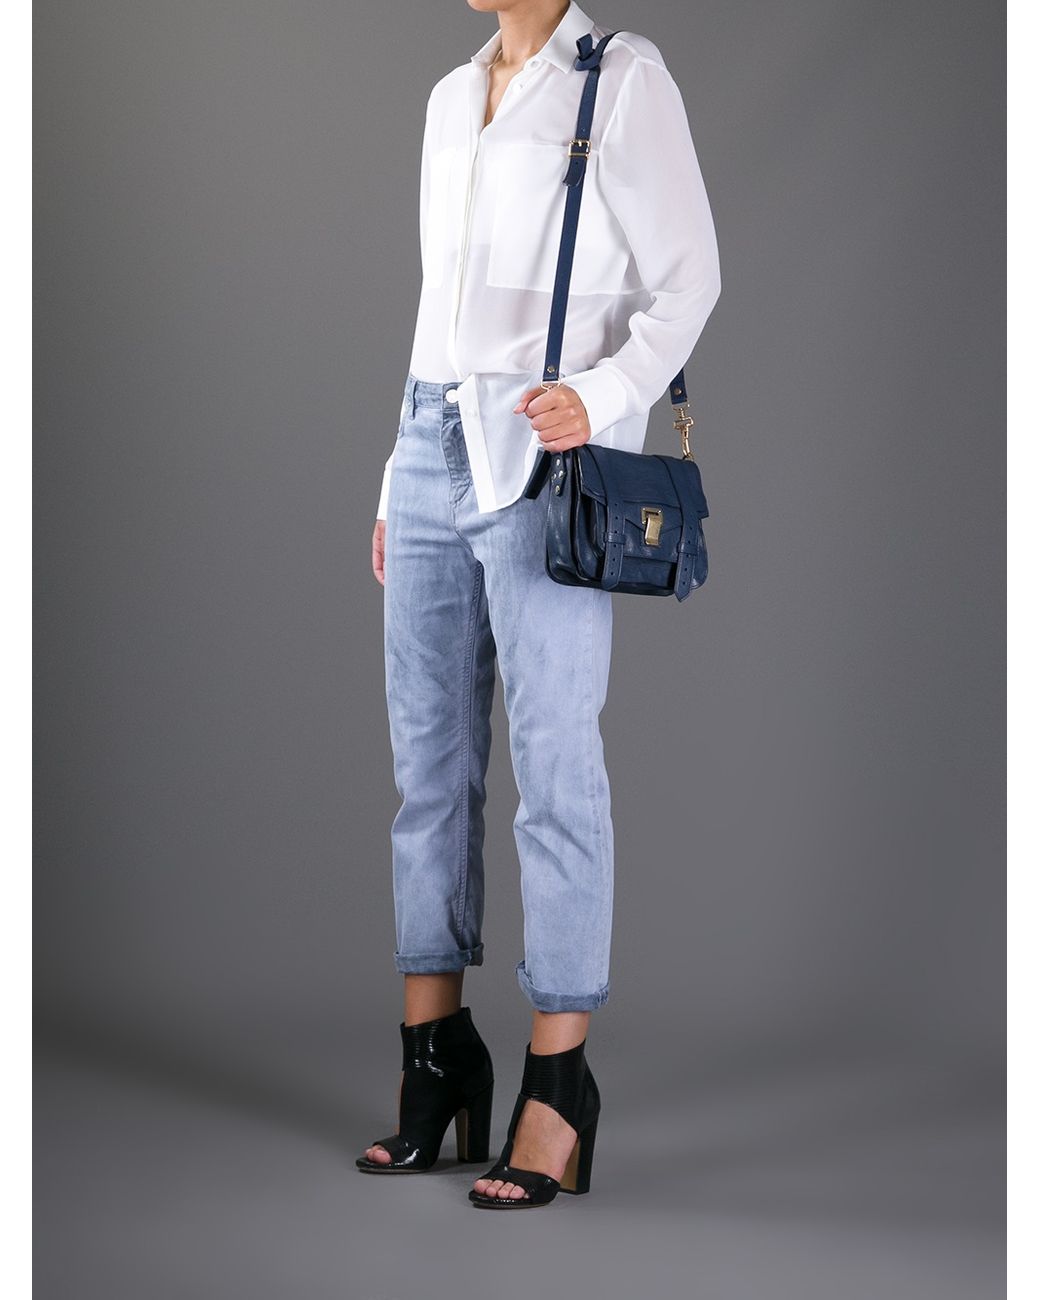 Proenza Schouler Women's Medium Ps1 Shoulder Bag, Polar Blue: Handbags:  Amazon.com